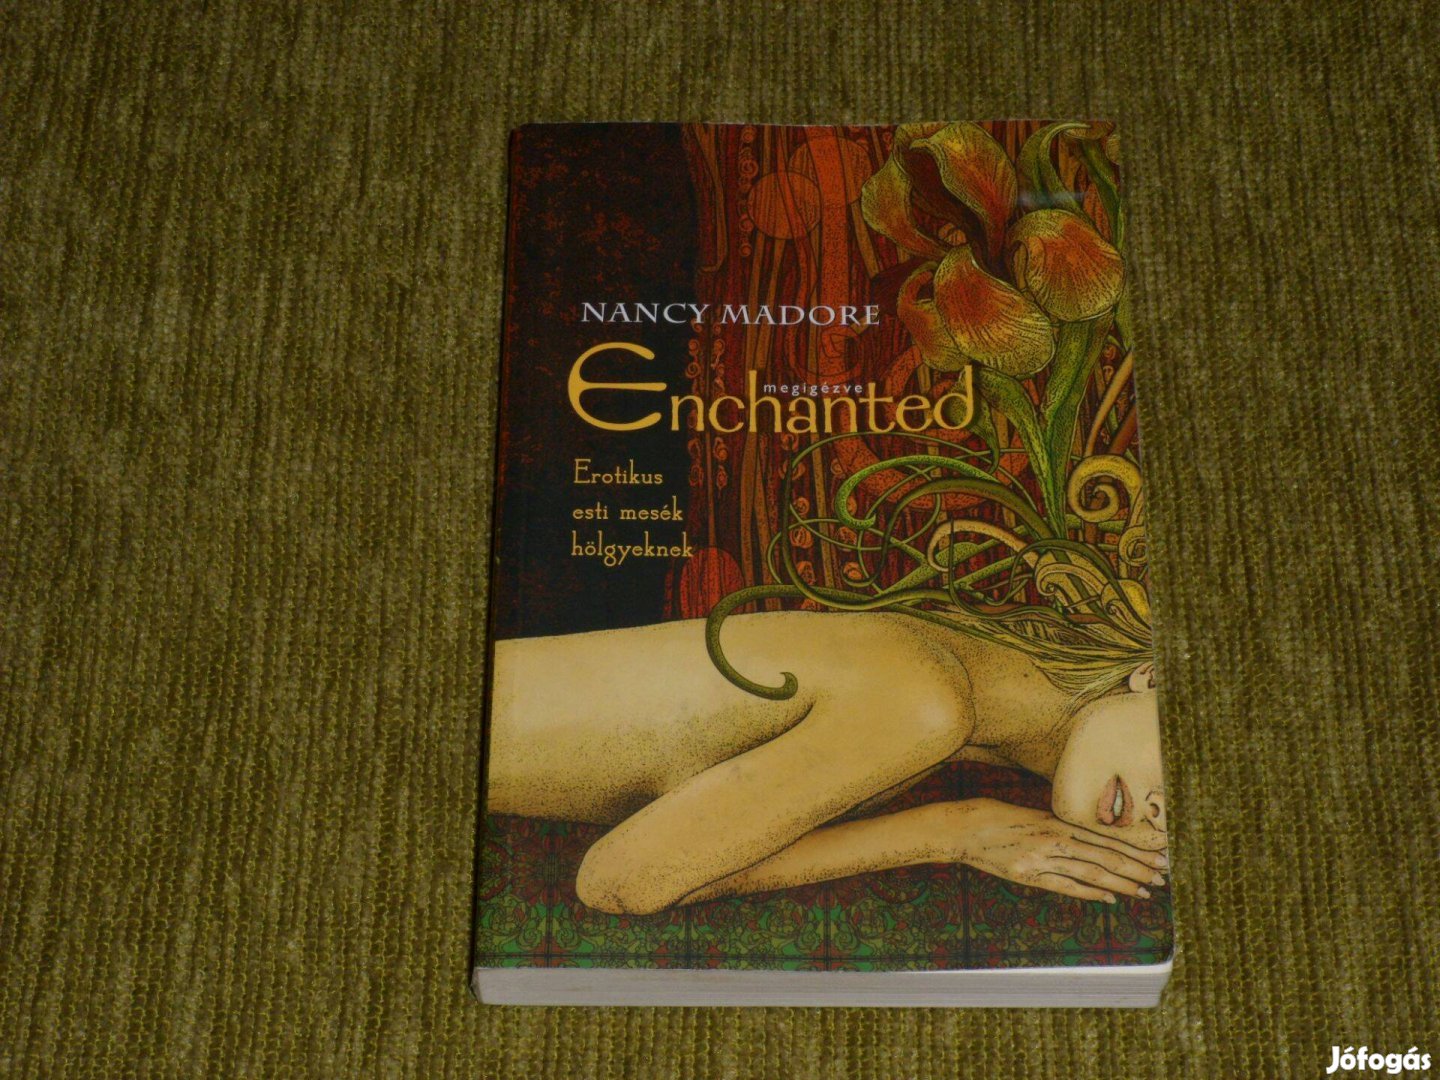 Enchanted megigézve - Erotikus esti mesék hölgyeknek